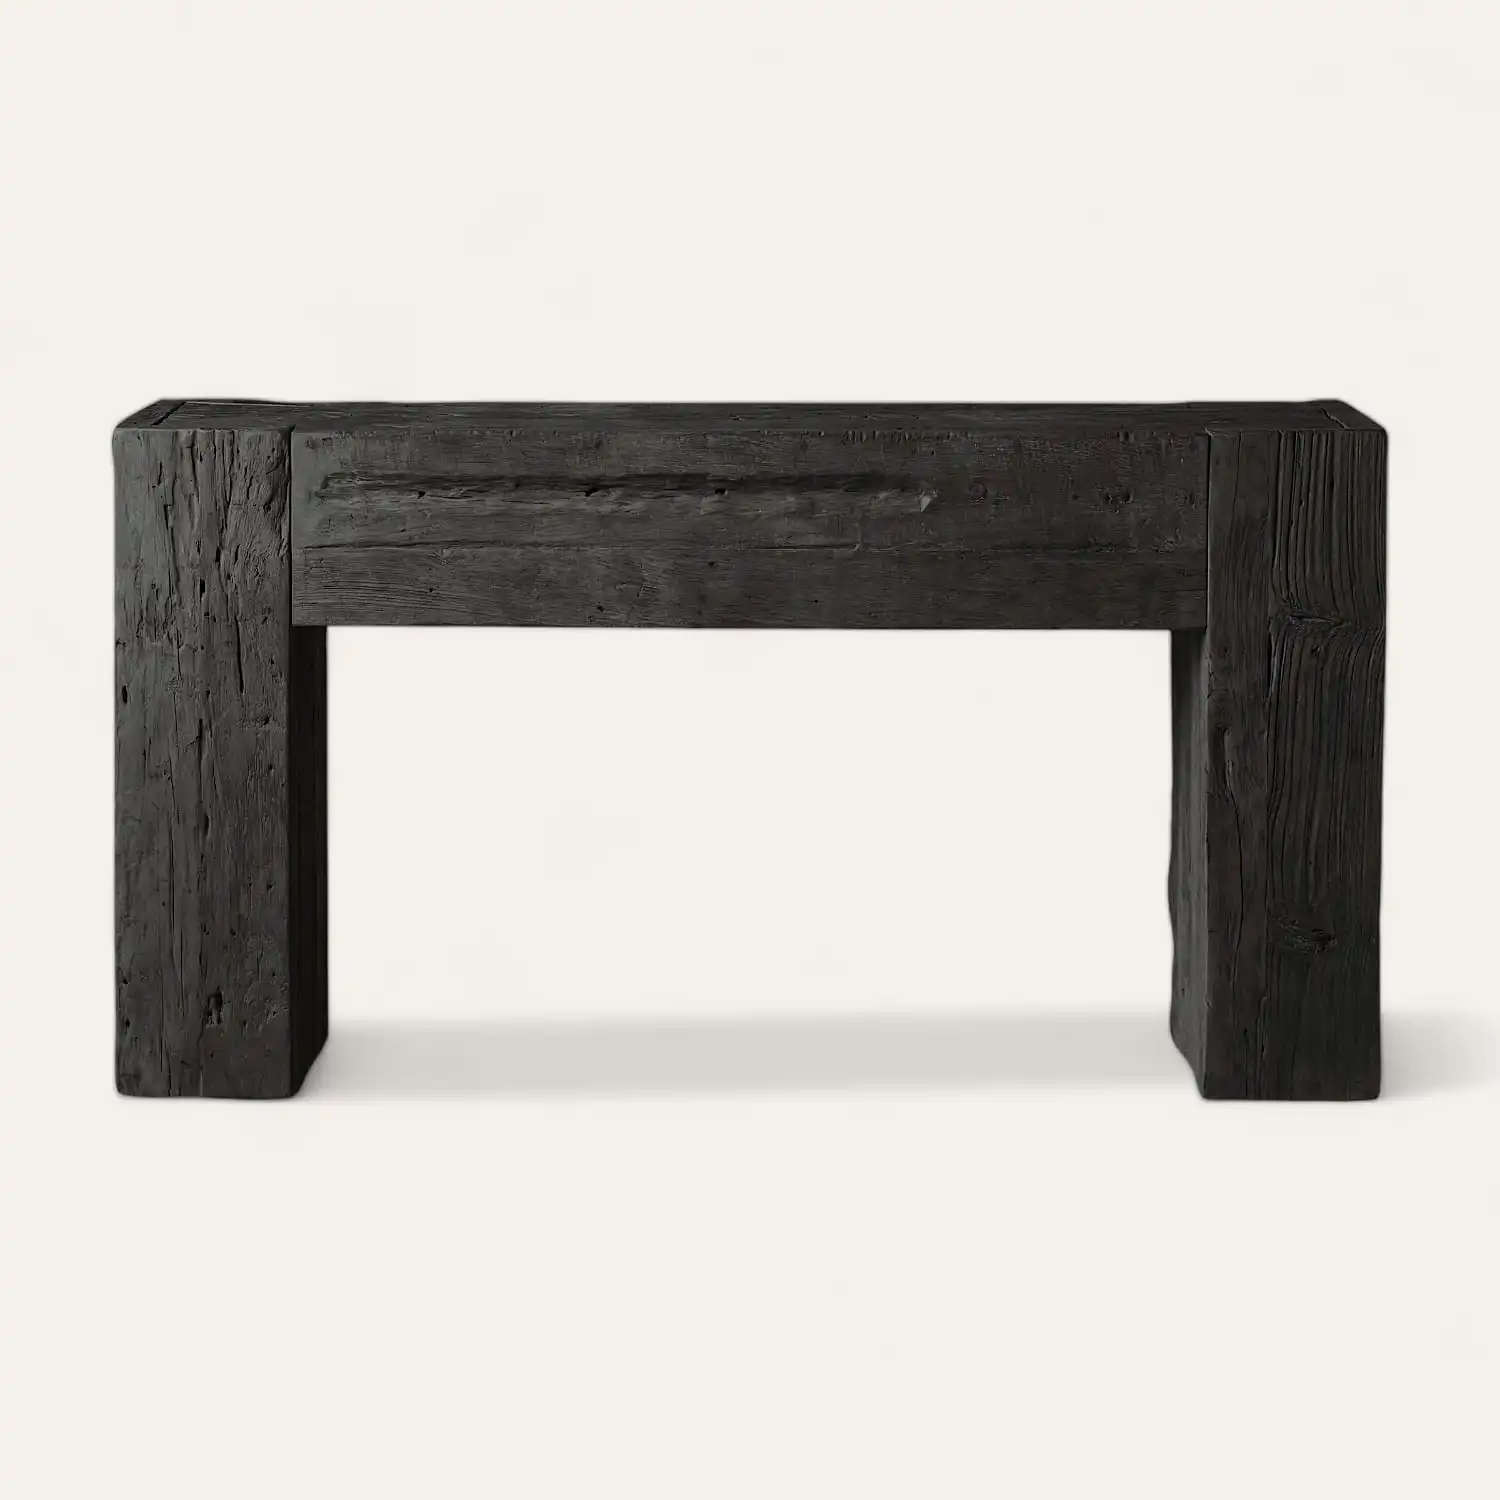 Une console rectangulaire en bois noir au design minimaliste. La surface et les pieds présentent un grain et une texture de bois visibles, rappelant le savoir-faire artisanal de la console en bois.